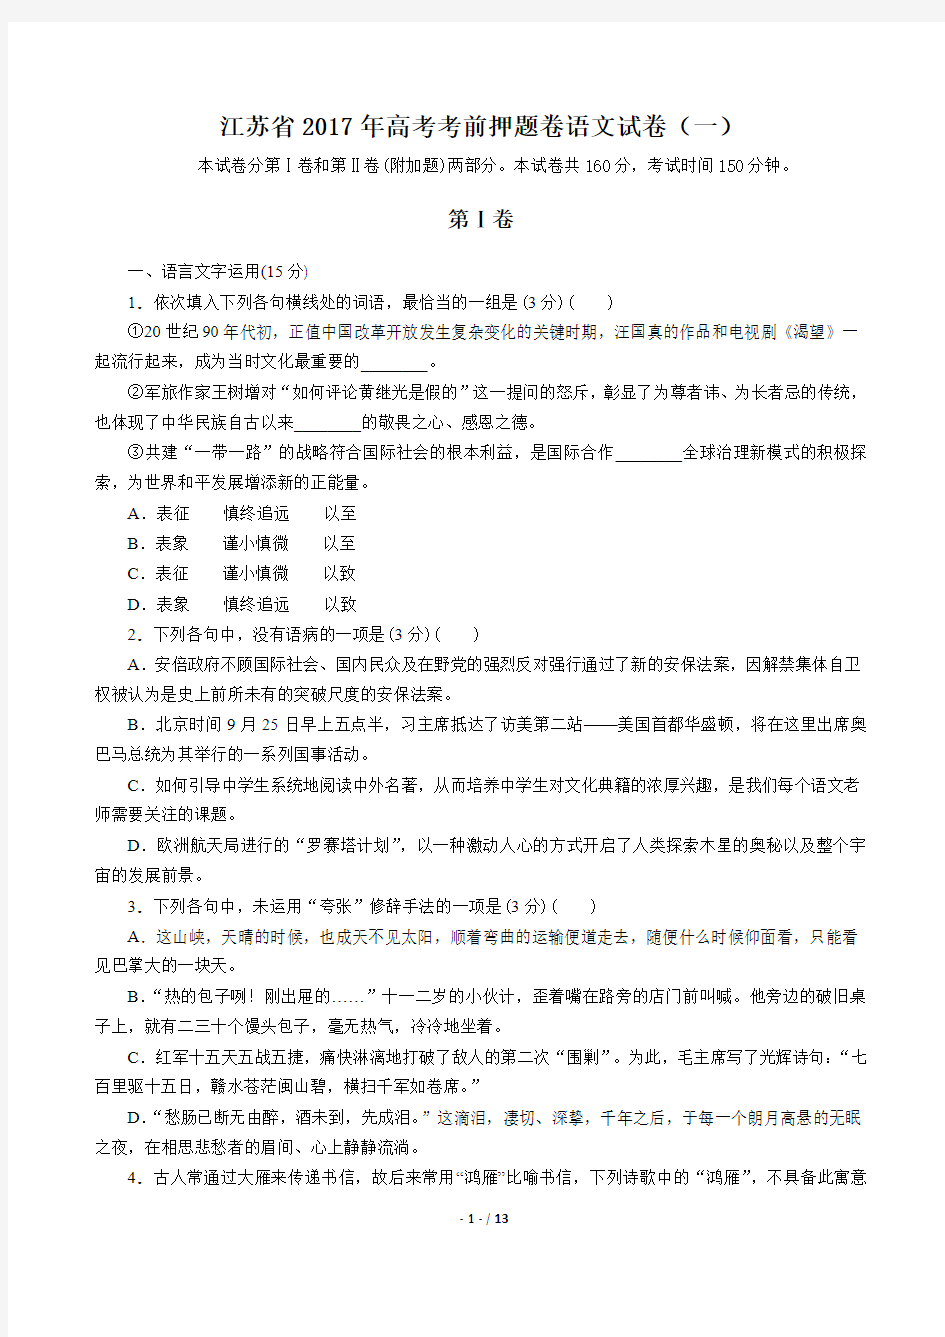 【江苏省】2017年高考考前押题卷语文试卷(一)(附答案与解析)